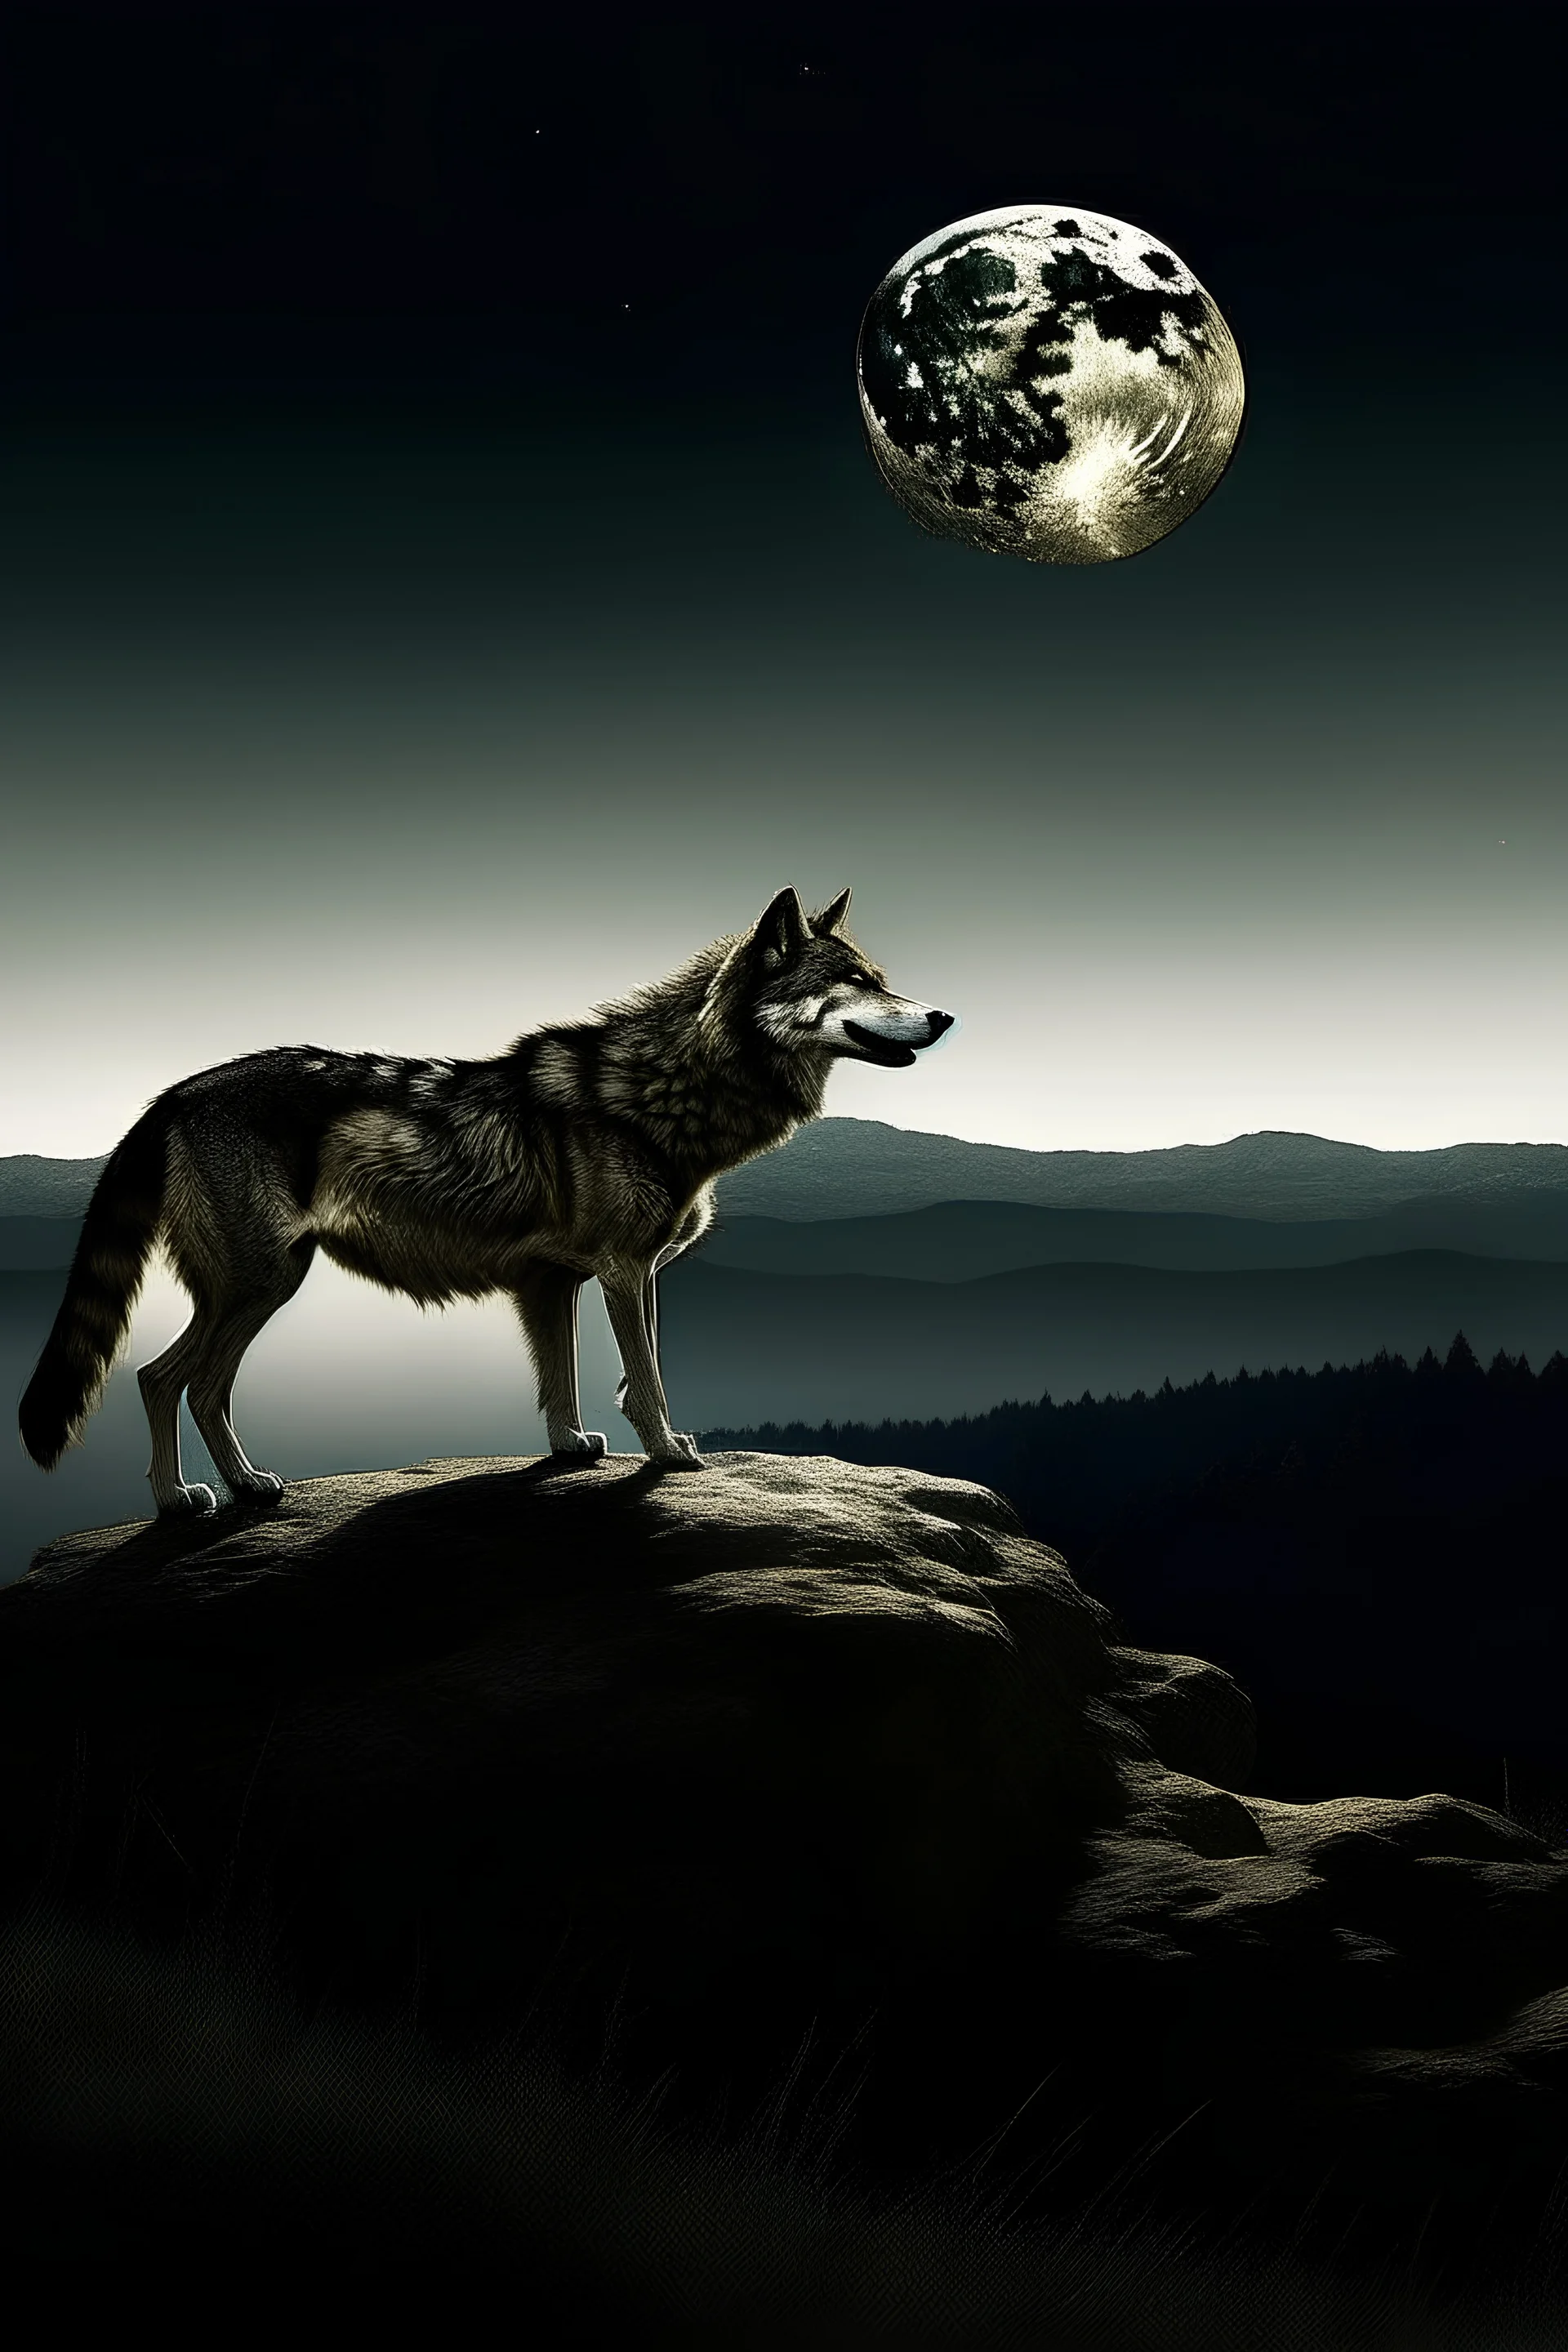 ذئب على تلة والقمر ظاهر من خلاله بمنظر خلاب